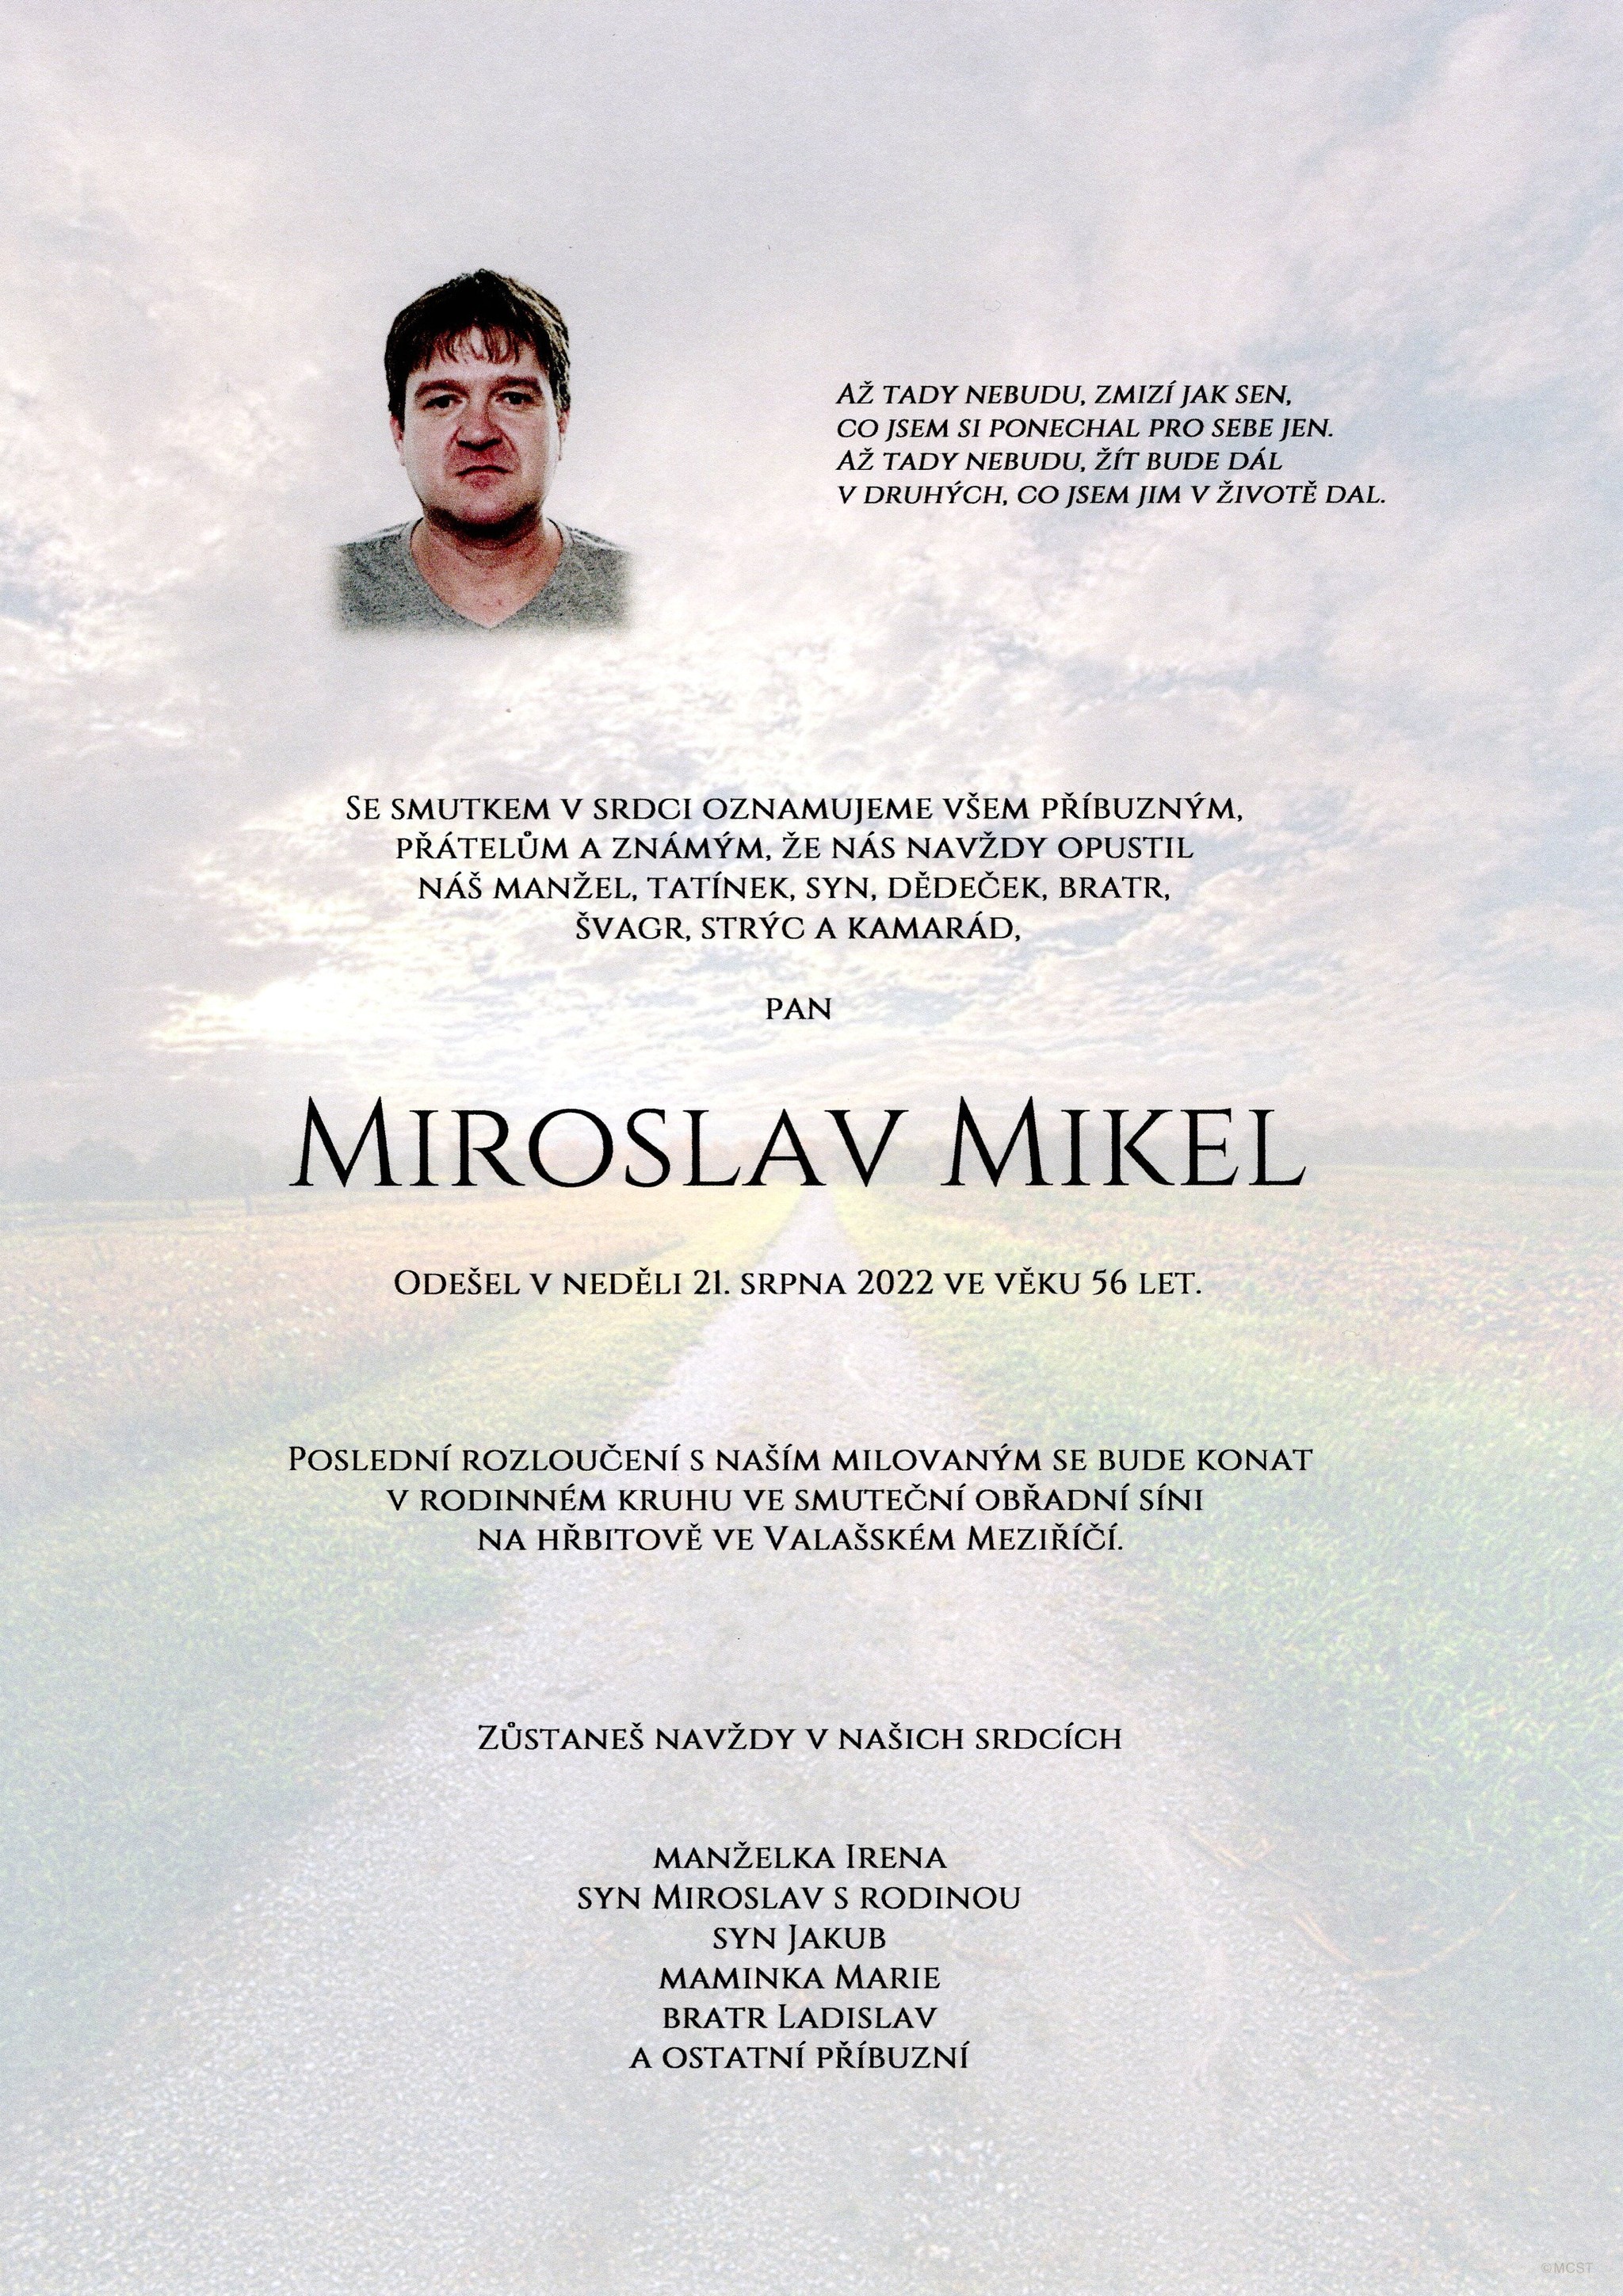 Miroslav Mikel